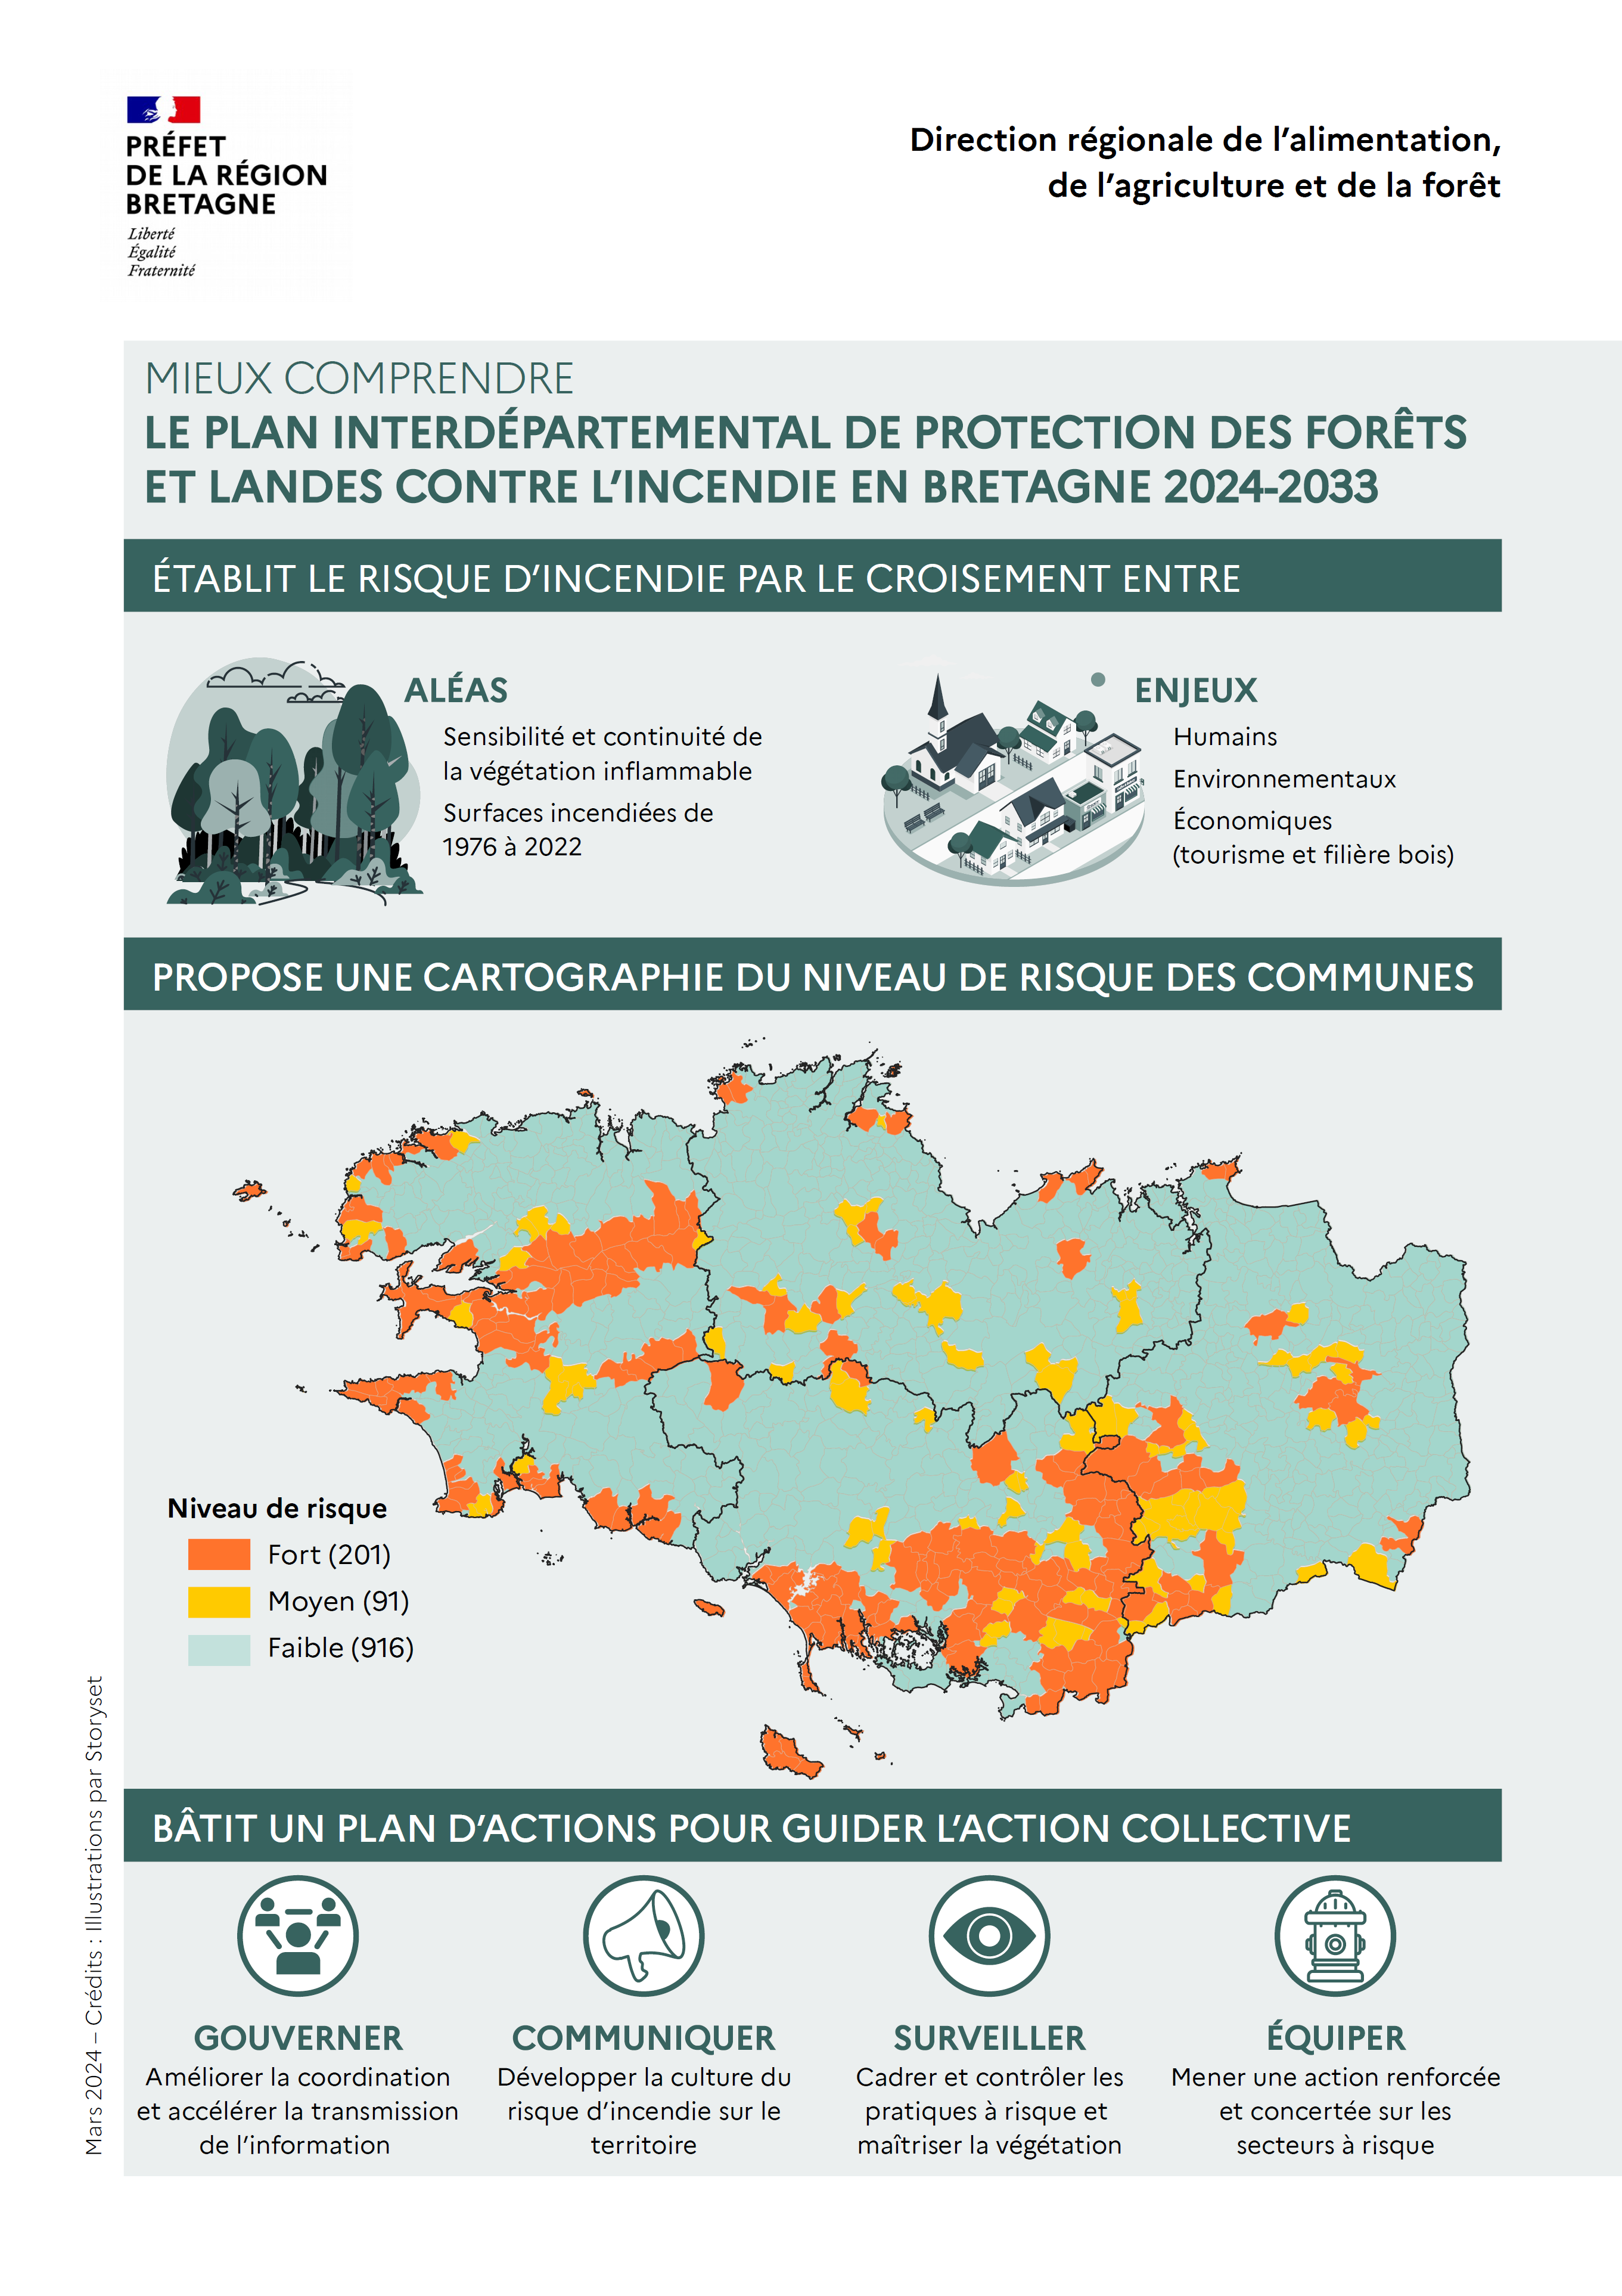 Mieux comprendre le Plan interdépartemental de protection des forêts et landes contre l'incendie en Bretagne 2024-2033